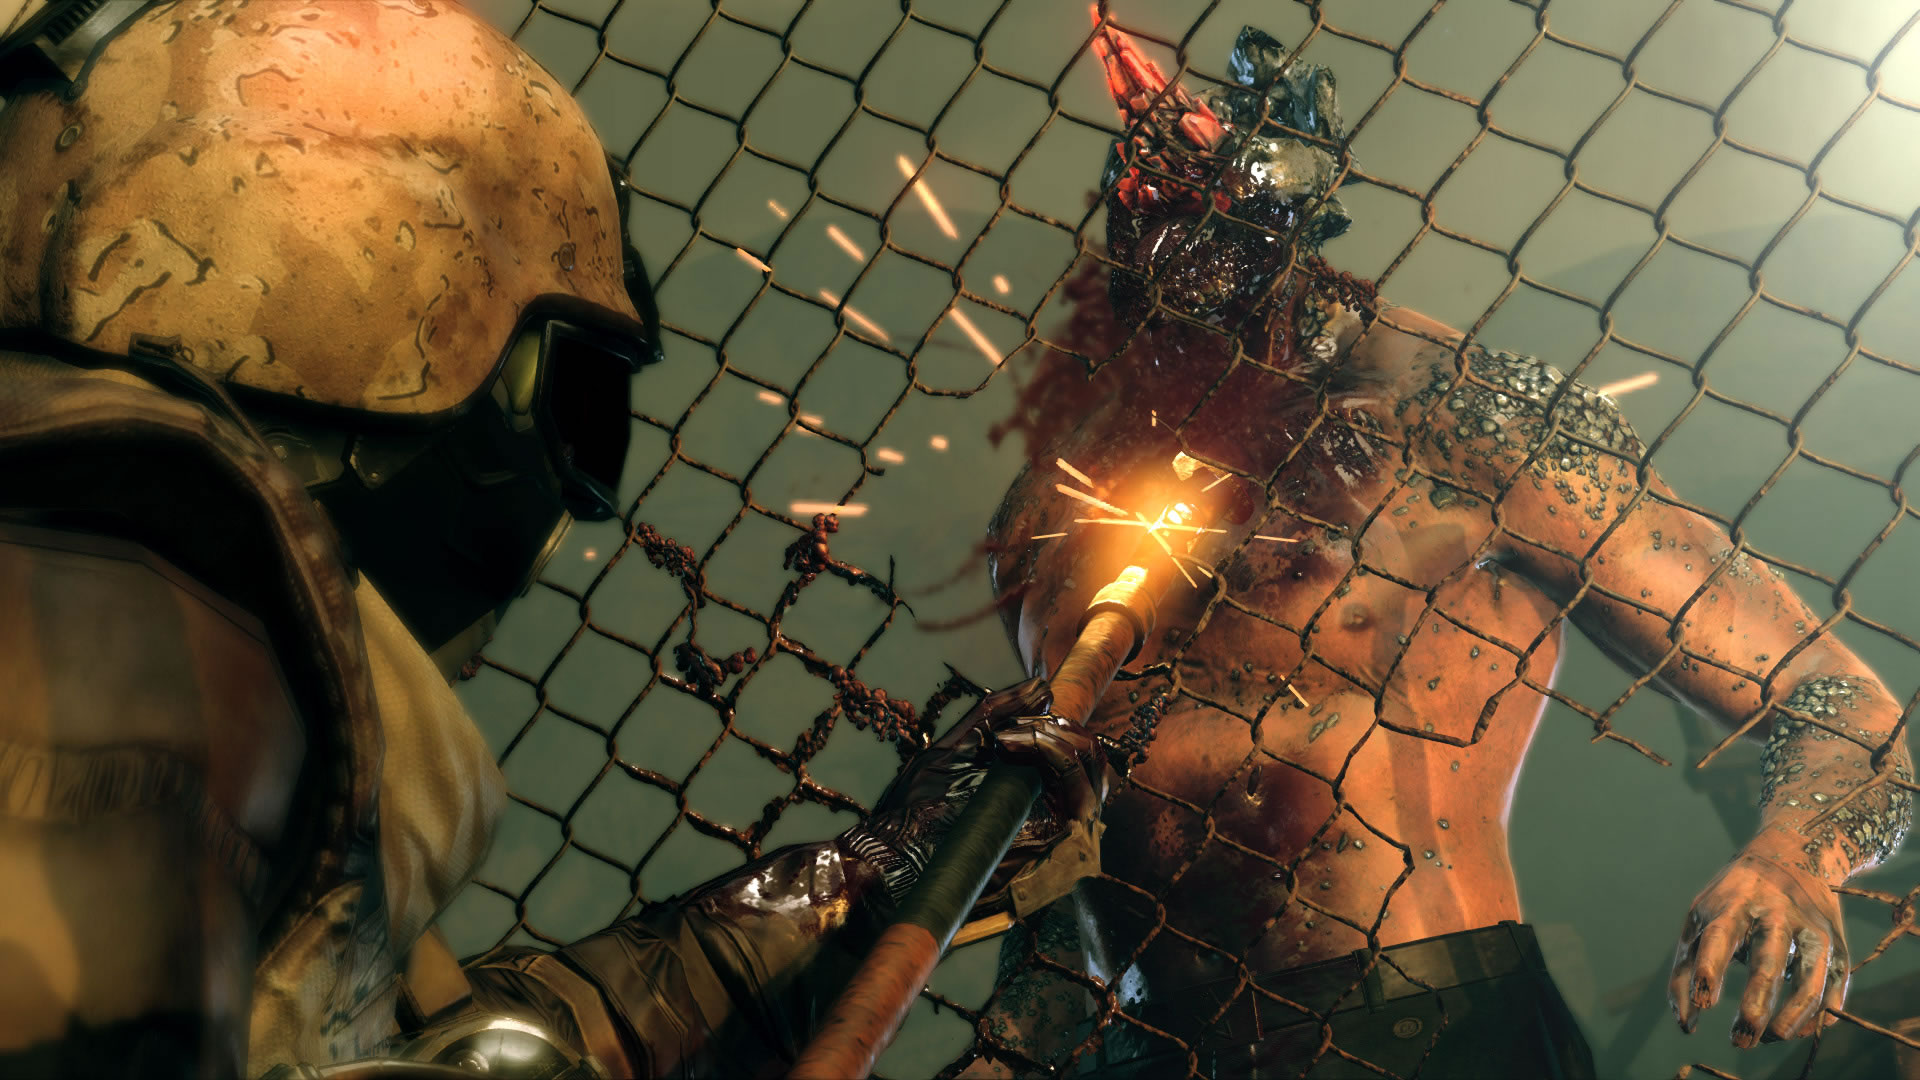 Konami annonce Metal Gear Survive, un jeu coopratif  4 joueurs